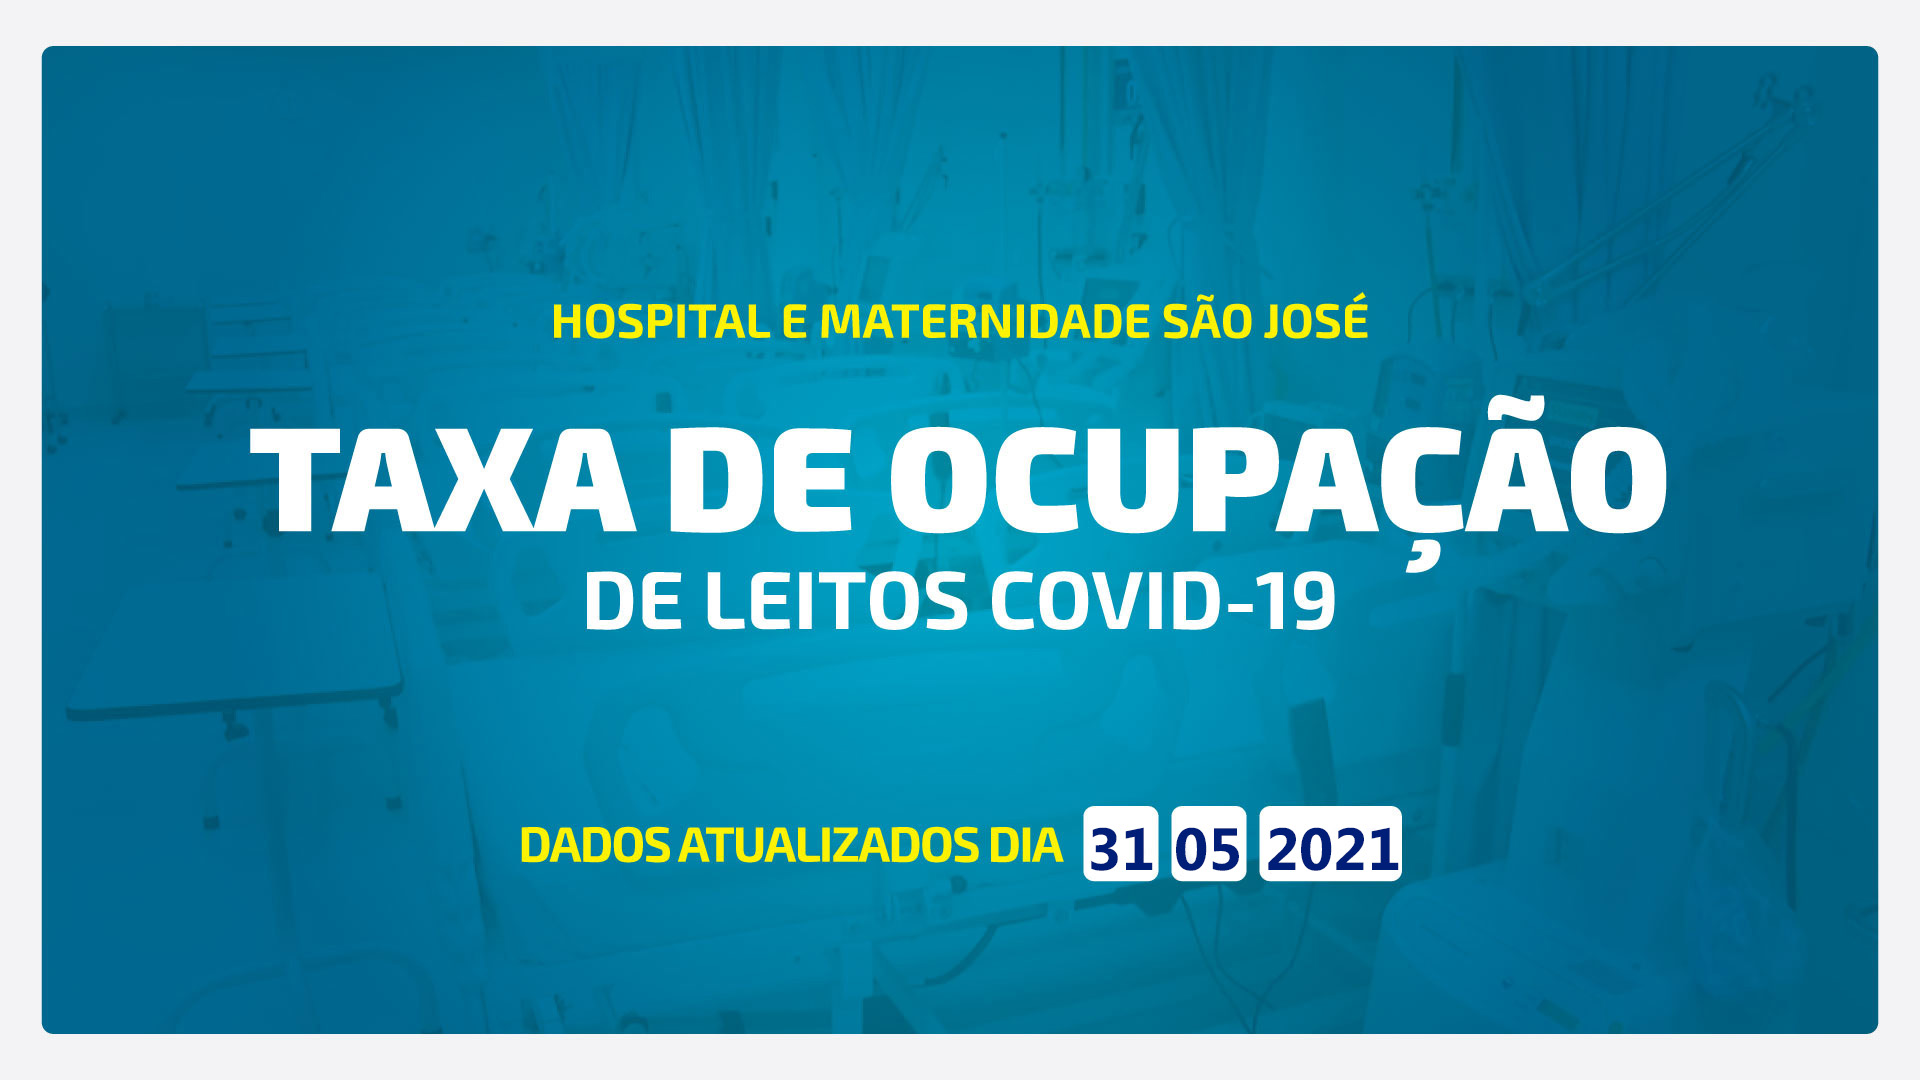 TAXA DE OCUPAÇÃO DE LEITOS DE COVID-19 ATUALIZADA DIA 31/05/2021